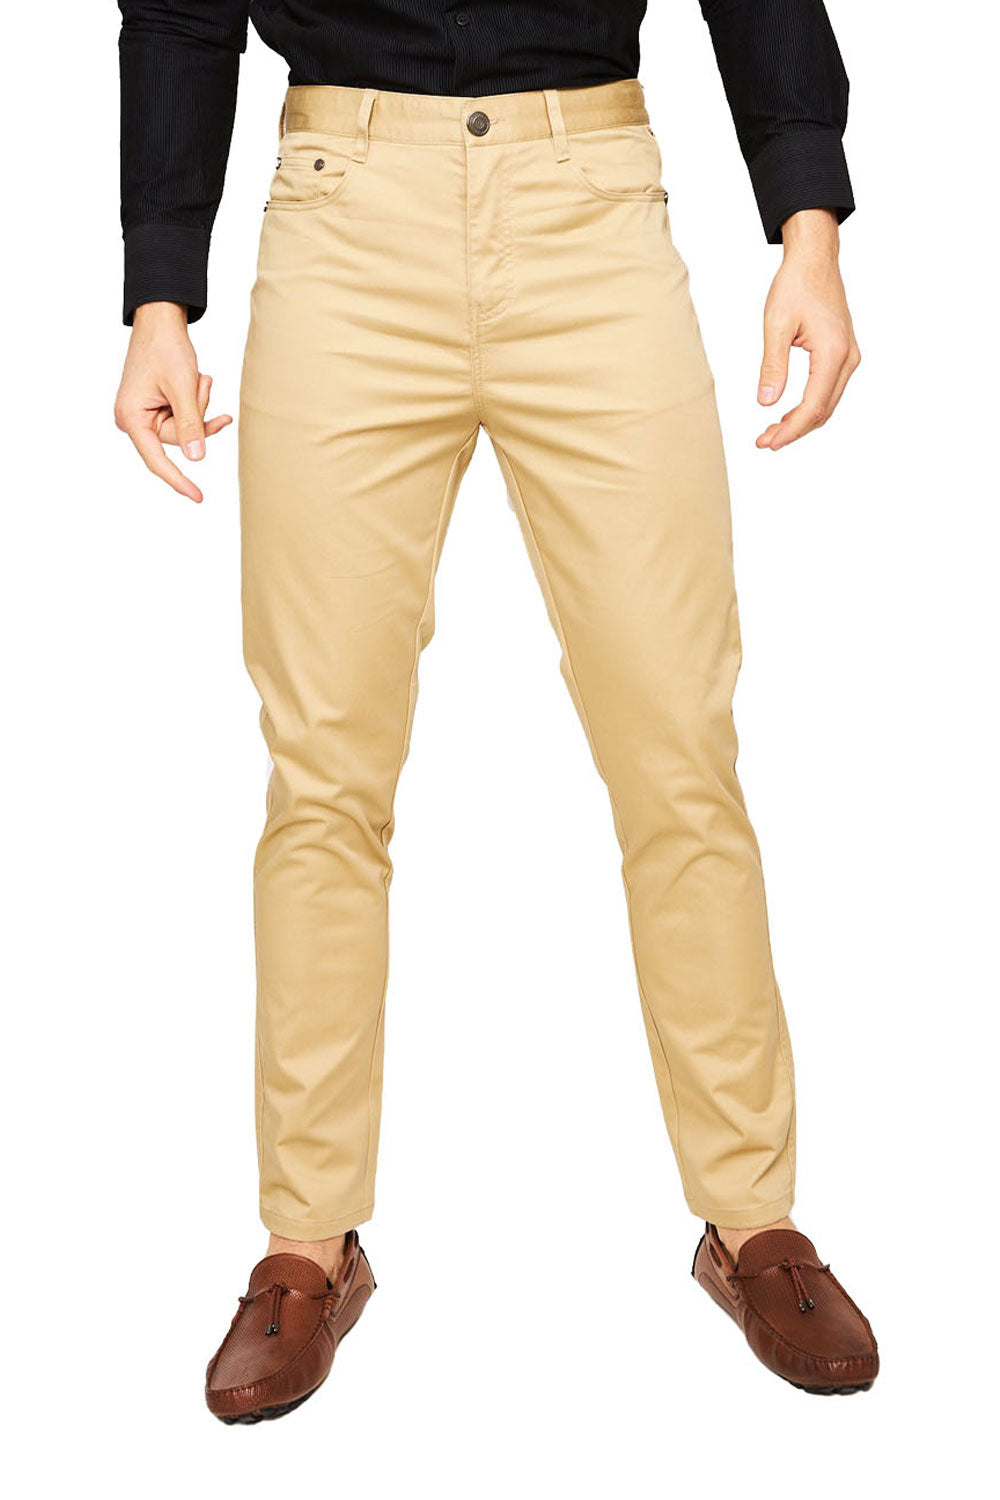 Barabas Men's Solid Color Front Button Fasten Classic Fit Pants B2073  KHAKI